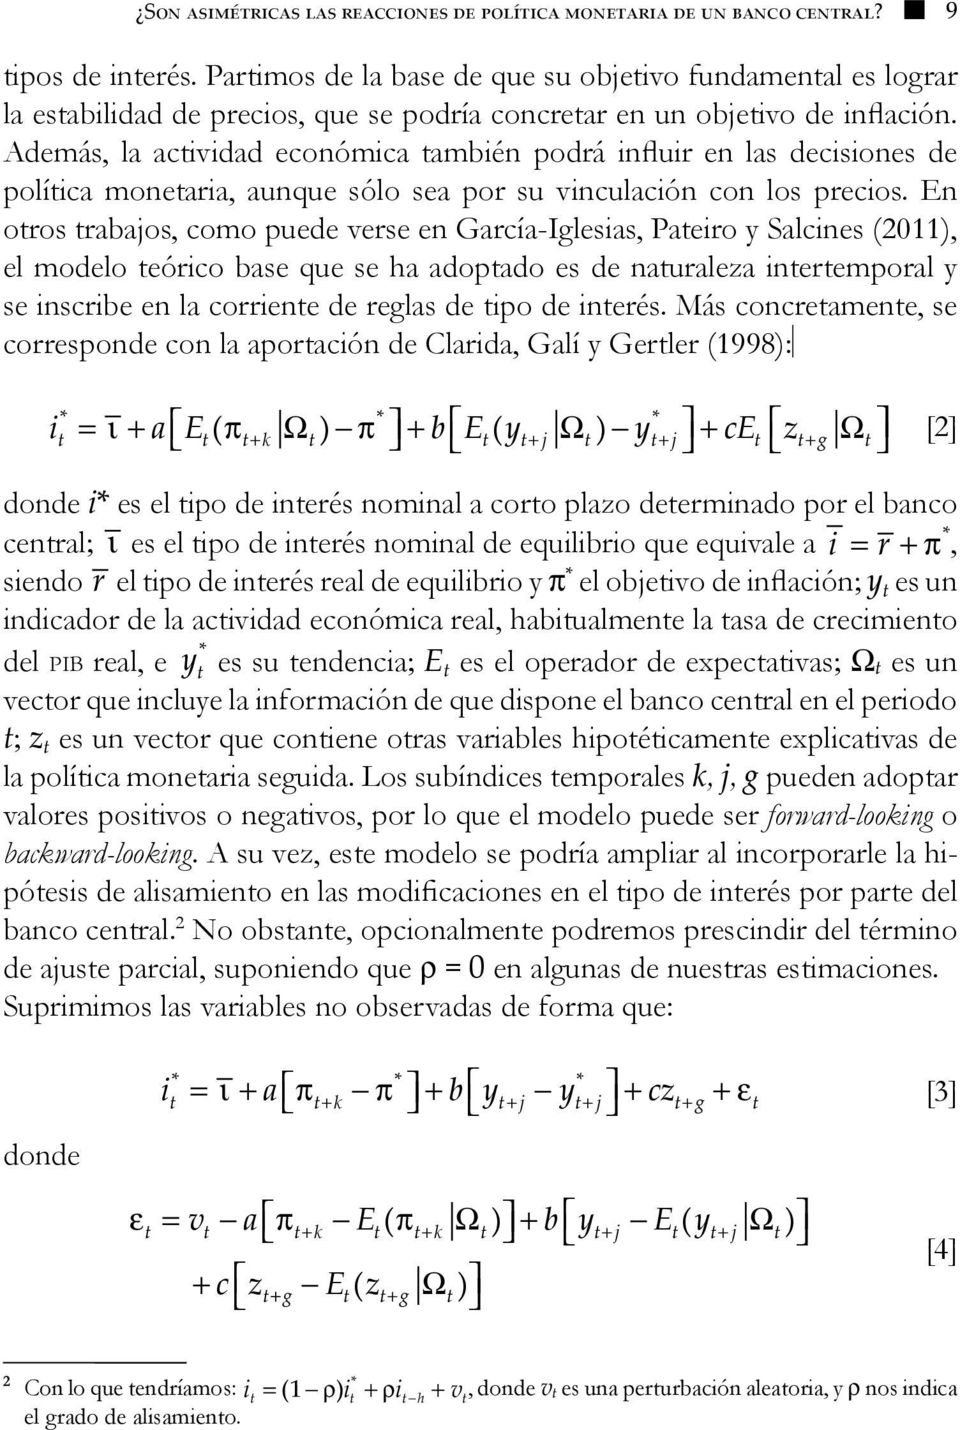 En oros rabajos, como puede verse en García-Iglesias, Paeiro y Salcines (011), el modelo eórico base que se ha adopado es de nauraleza ineremporal y se inscribe en la corriene de reglas de ipo de